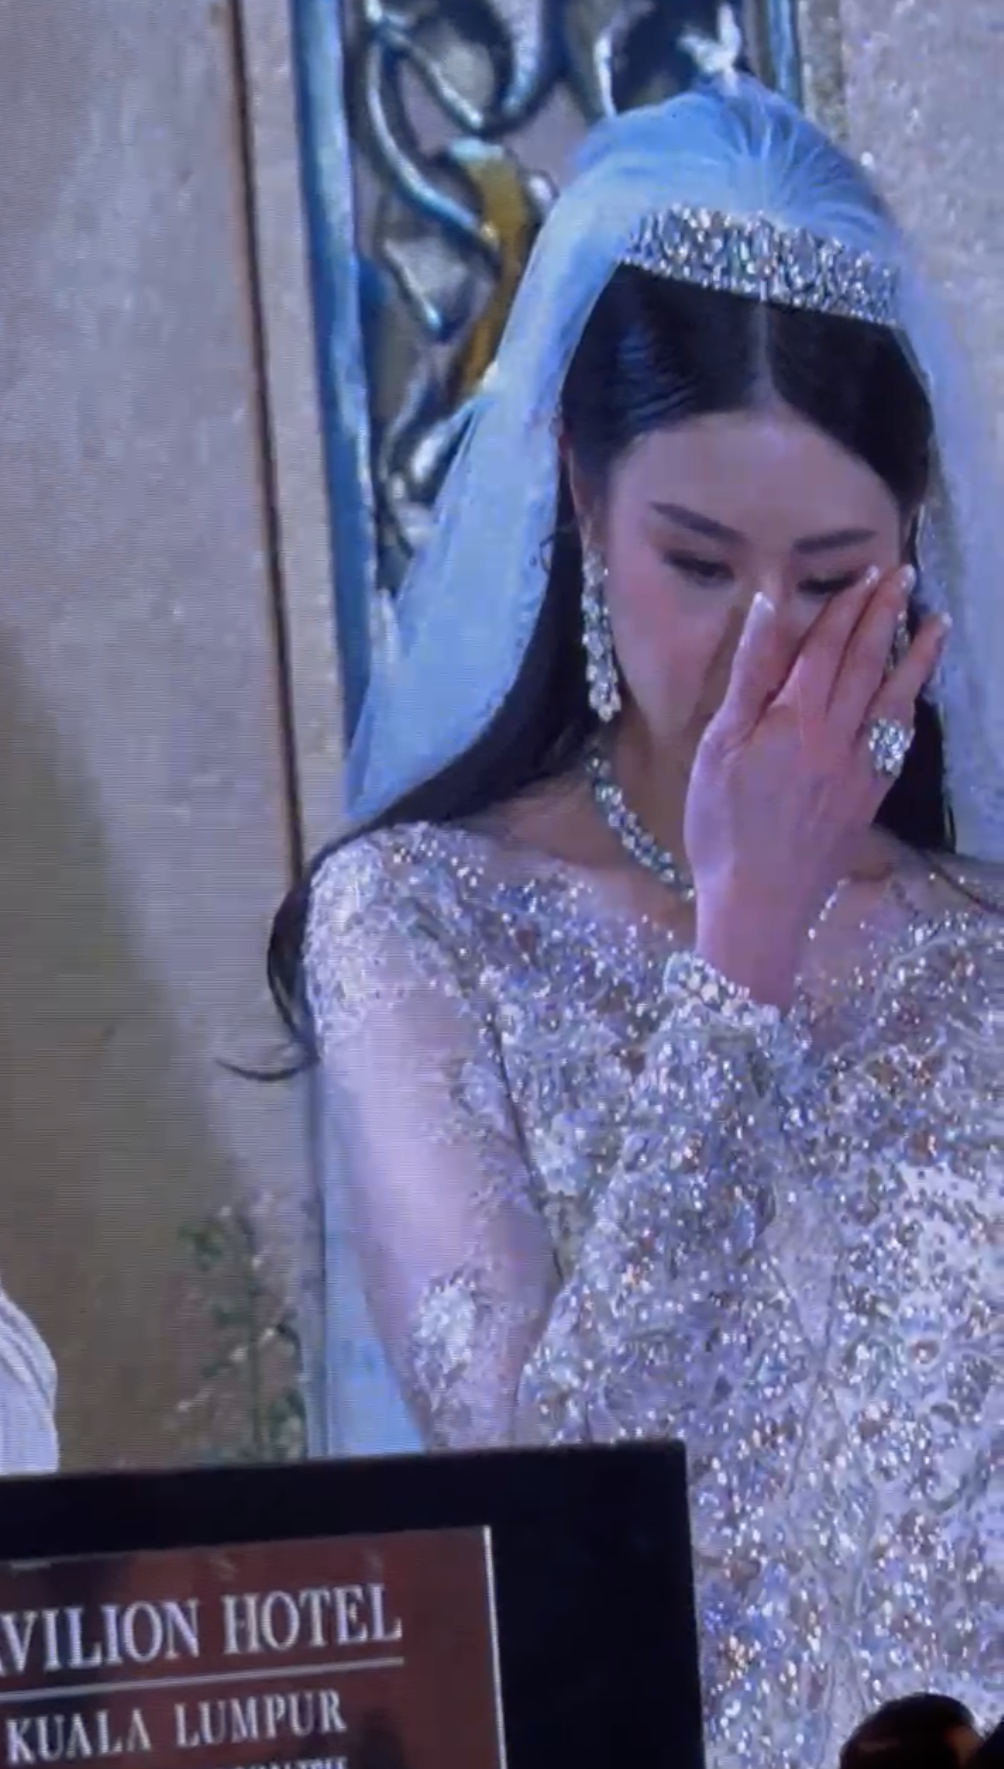 Nikola wiping tears away on wedding